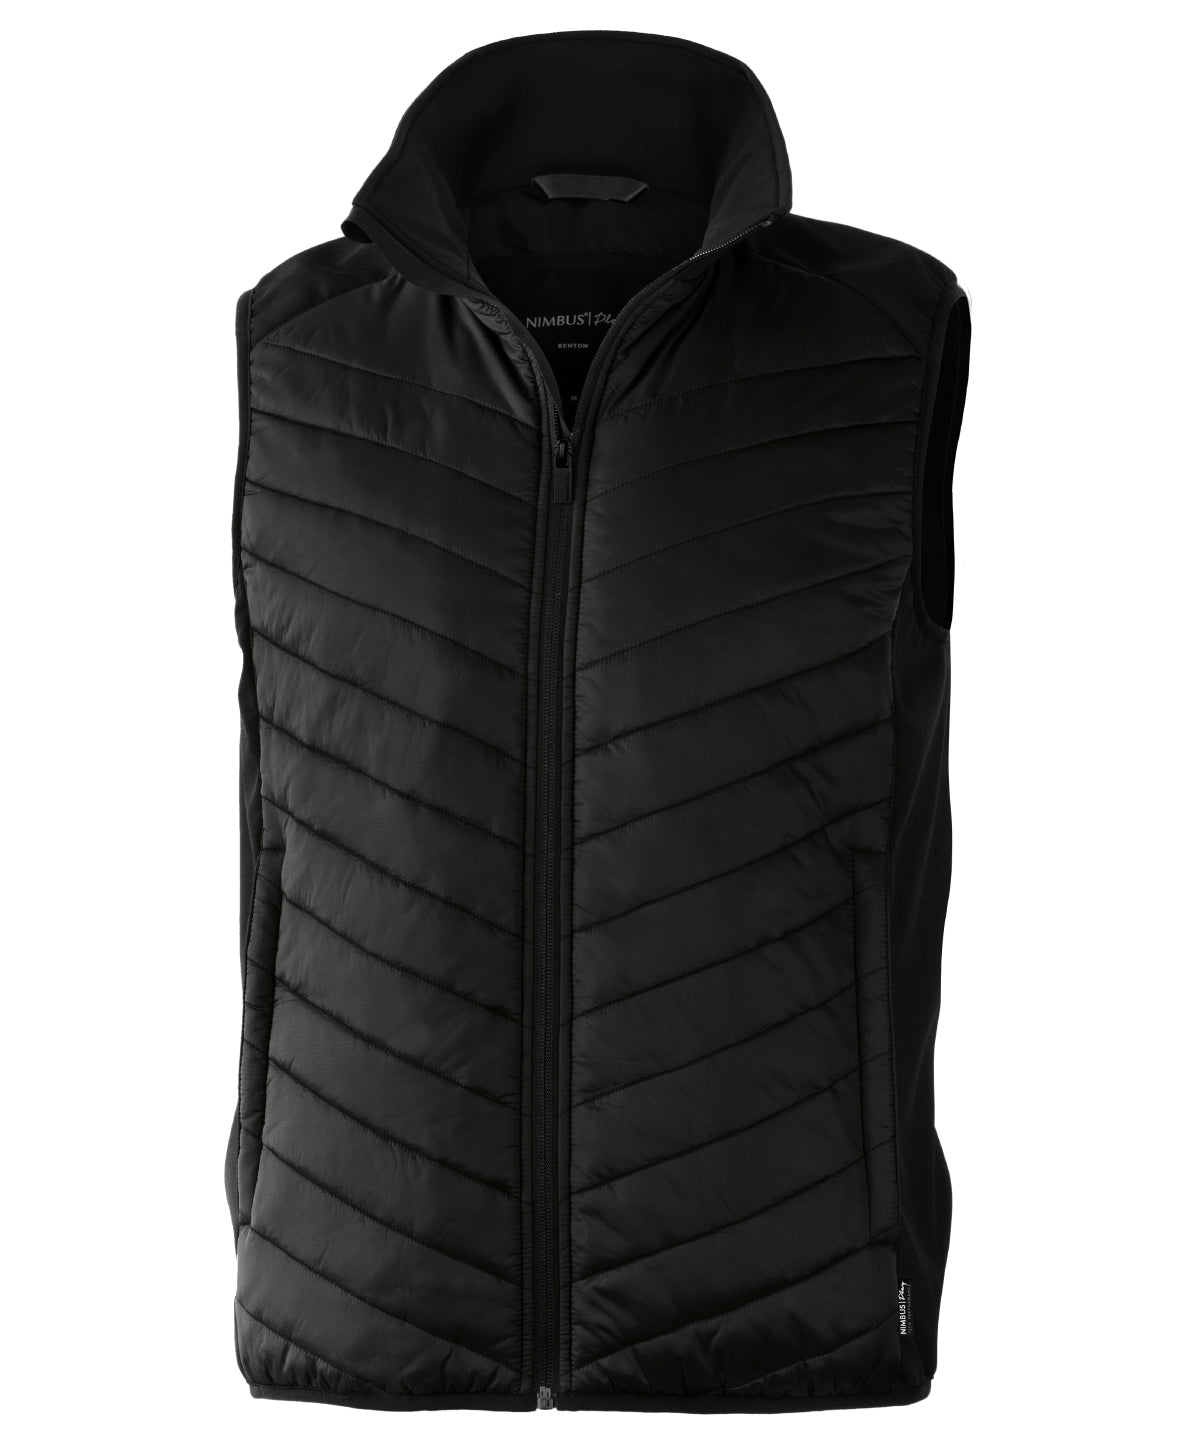 Vesti - Benton – Versatile Hybrid Vest